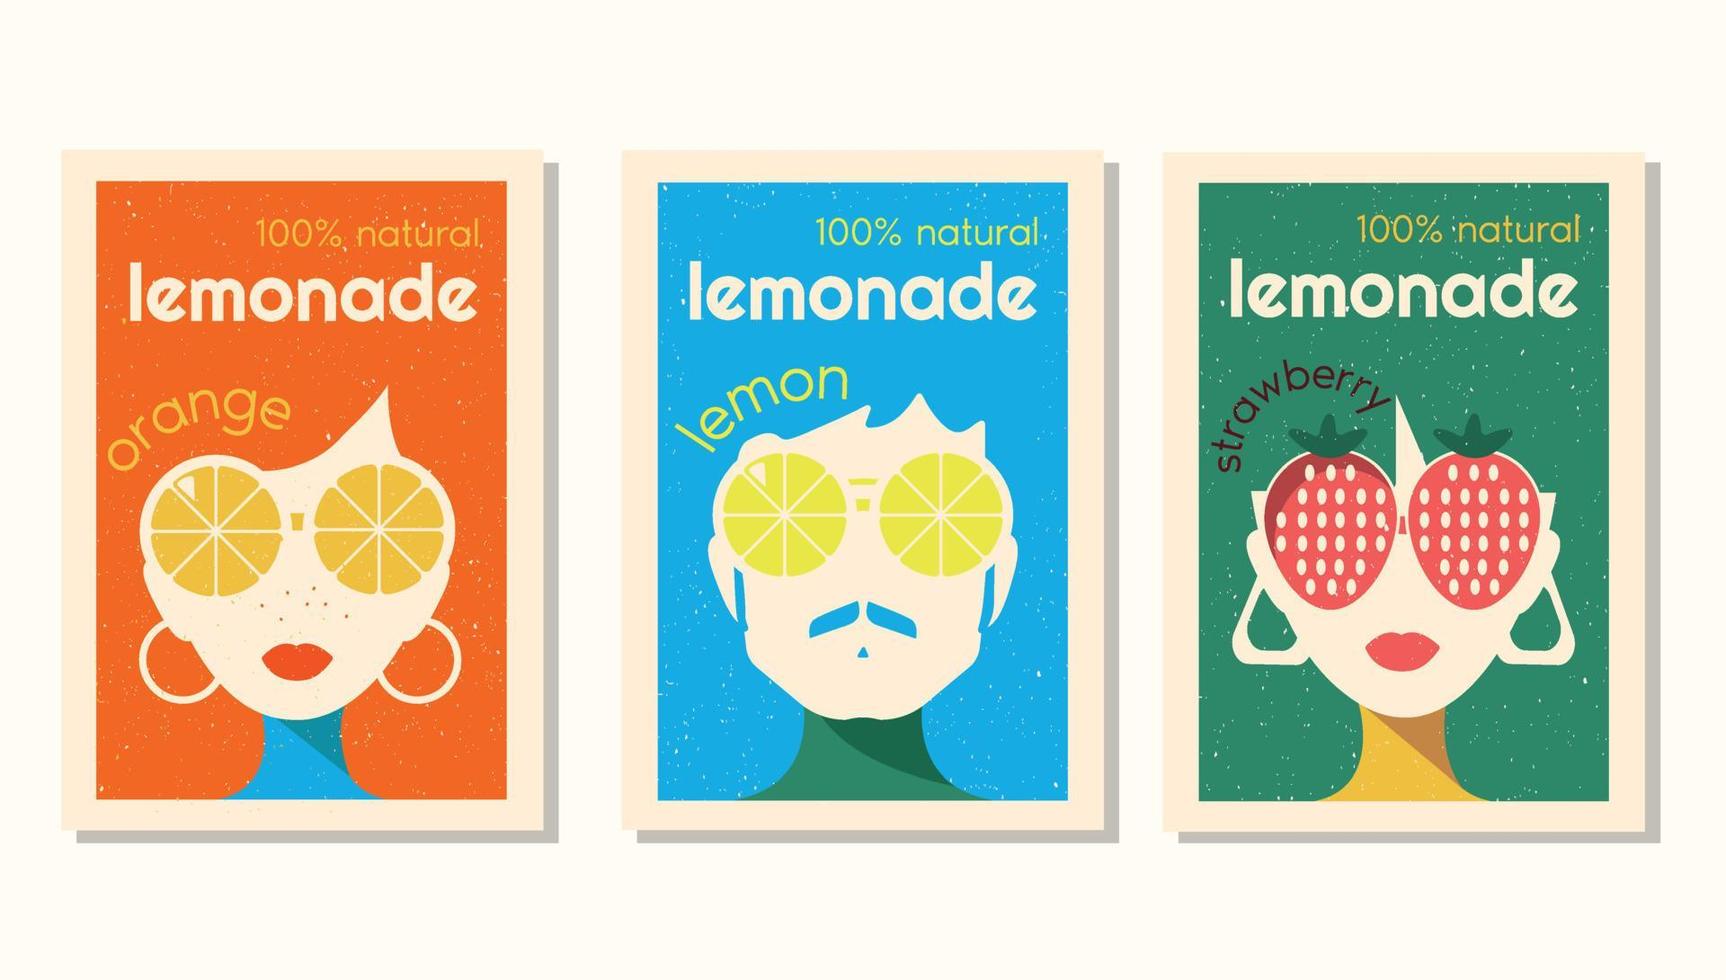 étiquette vectorielle définie pour la limonade dans un style rétro. conception d'étiquettes pour la limonade à la fraise, au citron et à l'orange avec des personnages portant de grands verres dans le style des années 70. vecteur